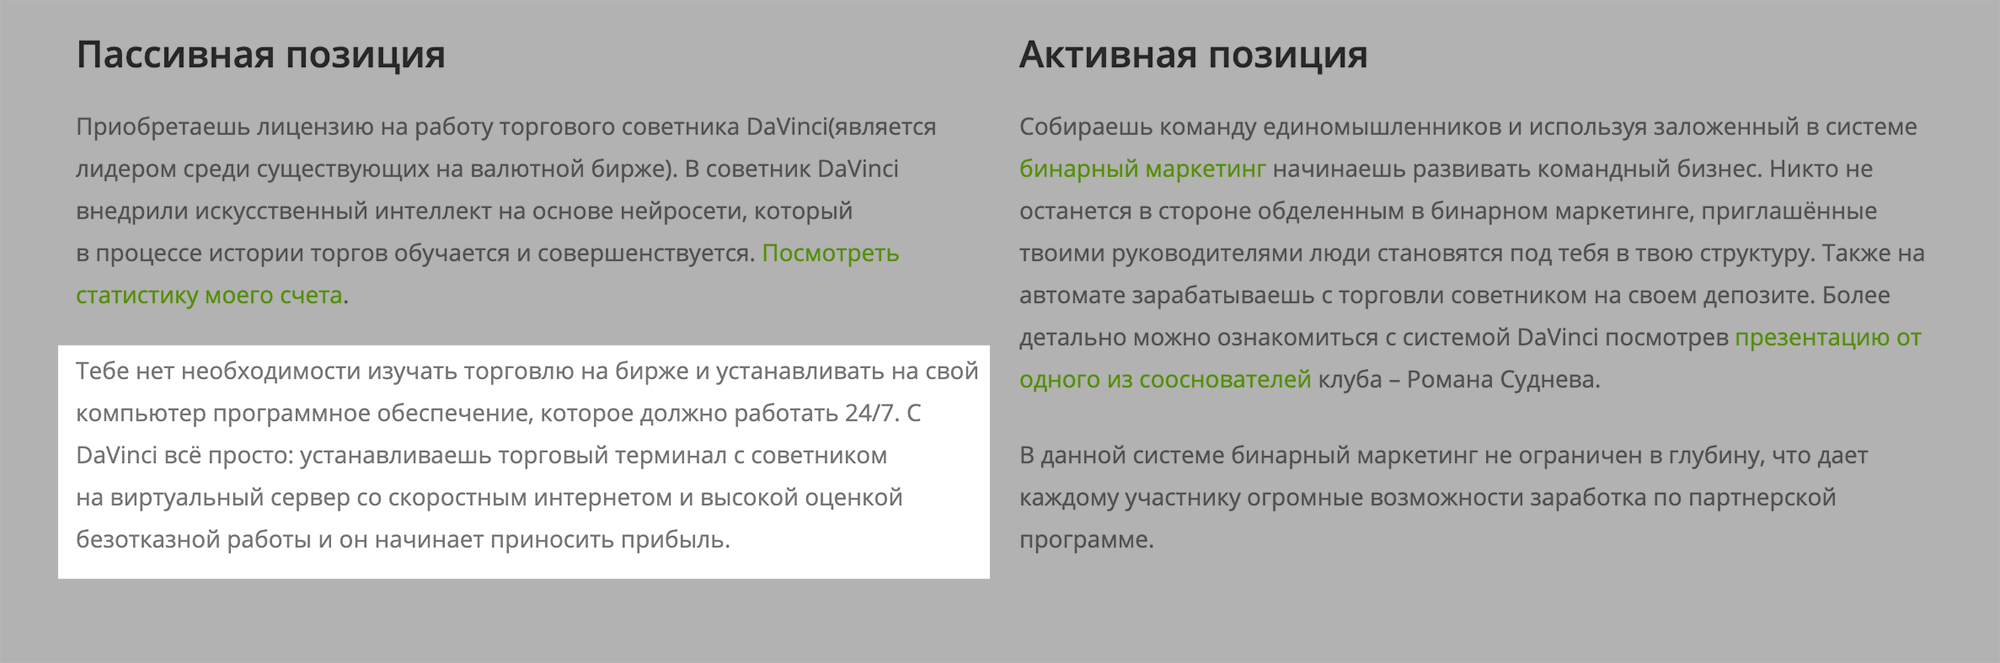 Ему вторит сайт davincibot.ru — по его утверждению, компьютер не должен работать круглые сутки